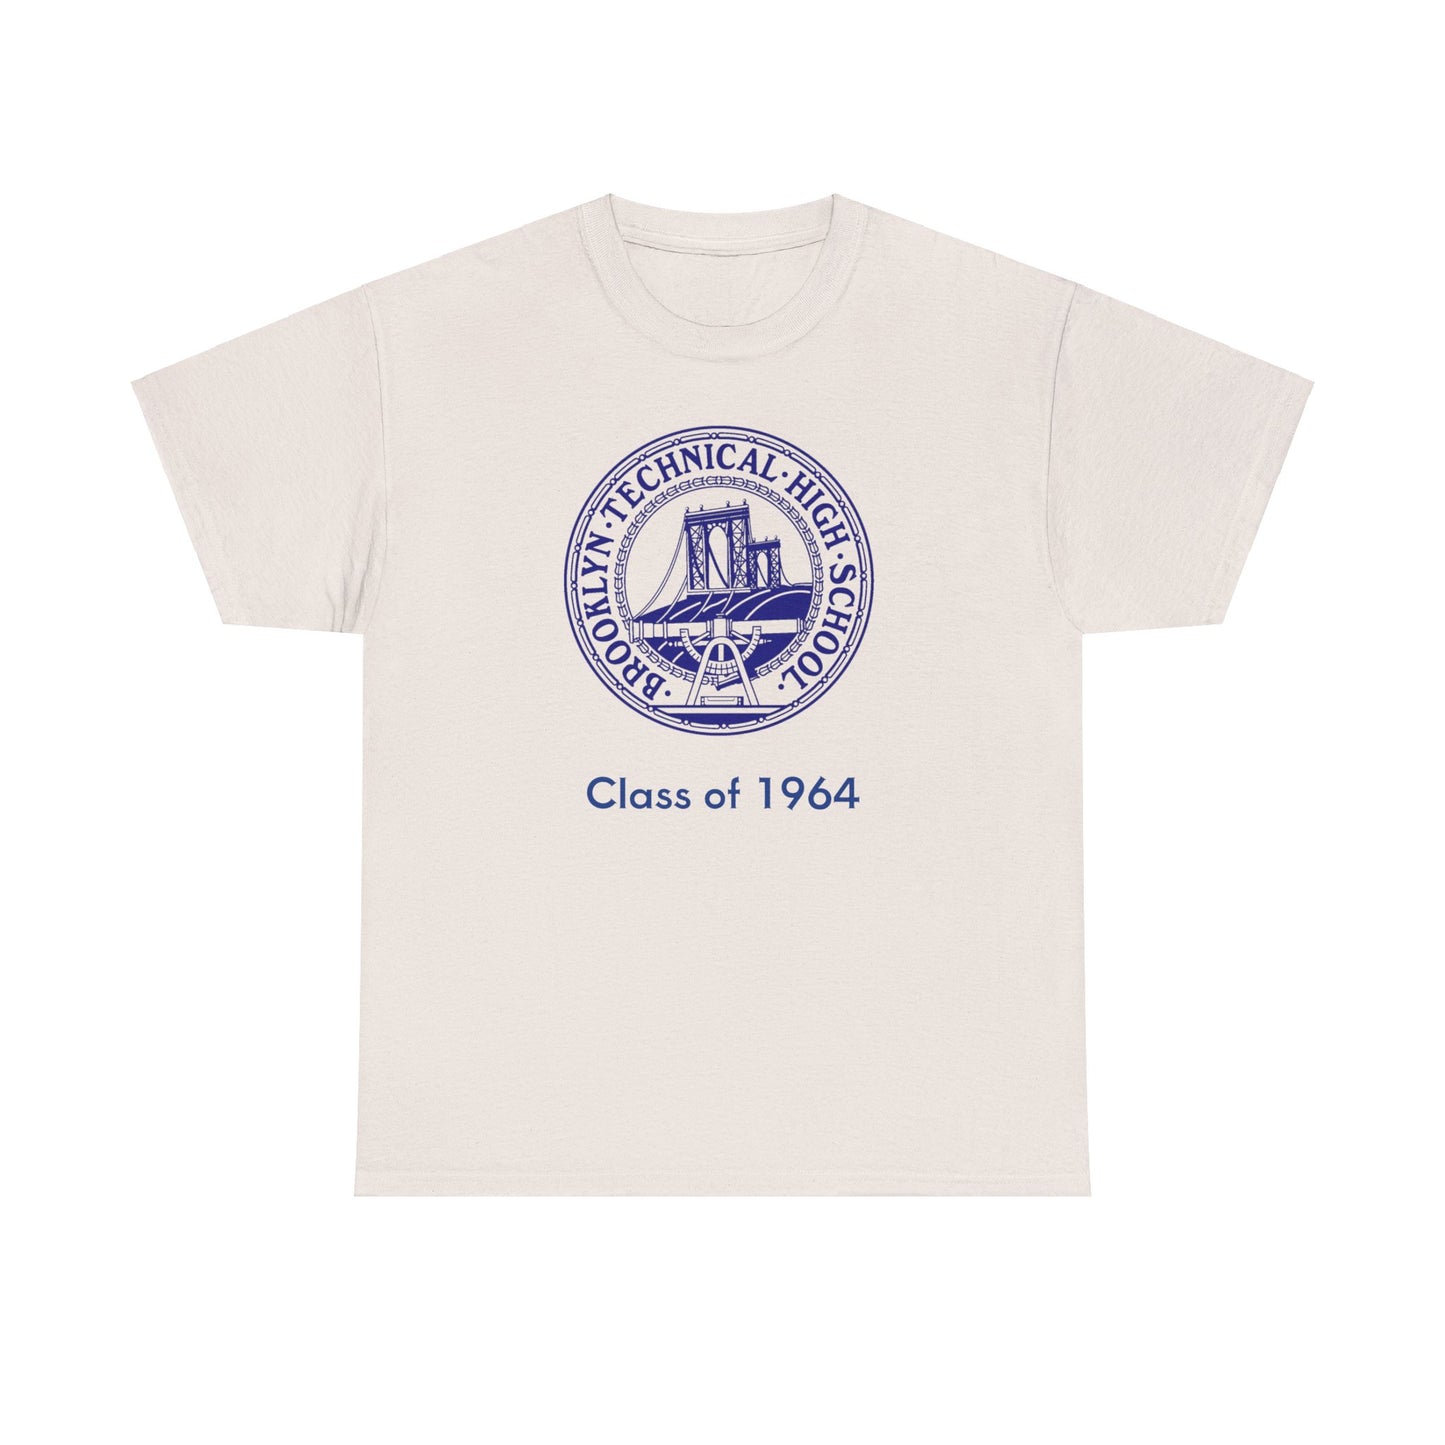 Classic Tech Seal - Men's Heavy Cotton T-Shirt - Class Of 1964